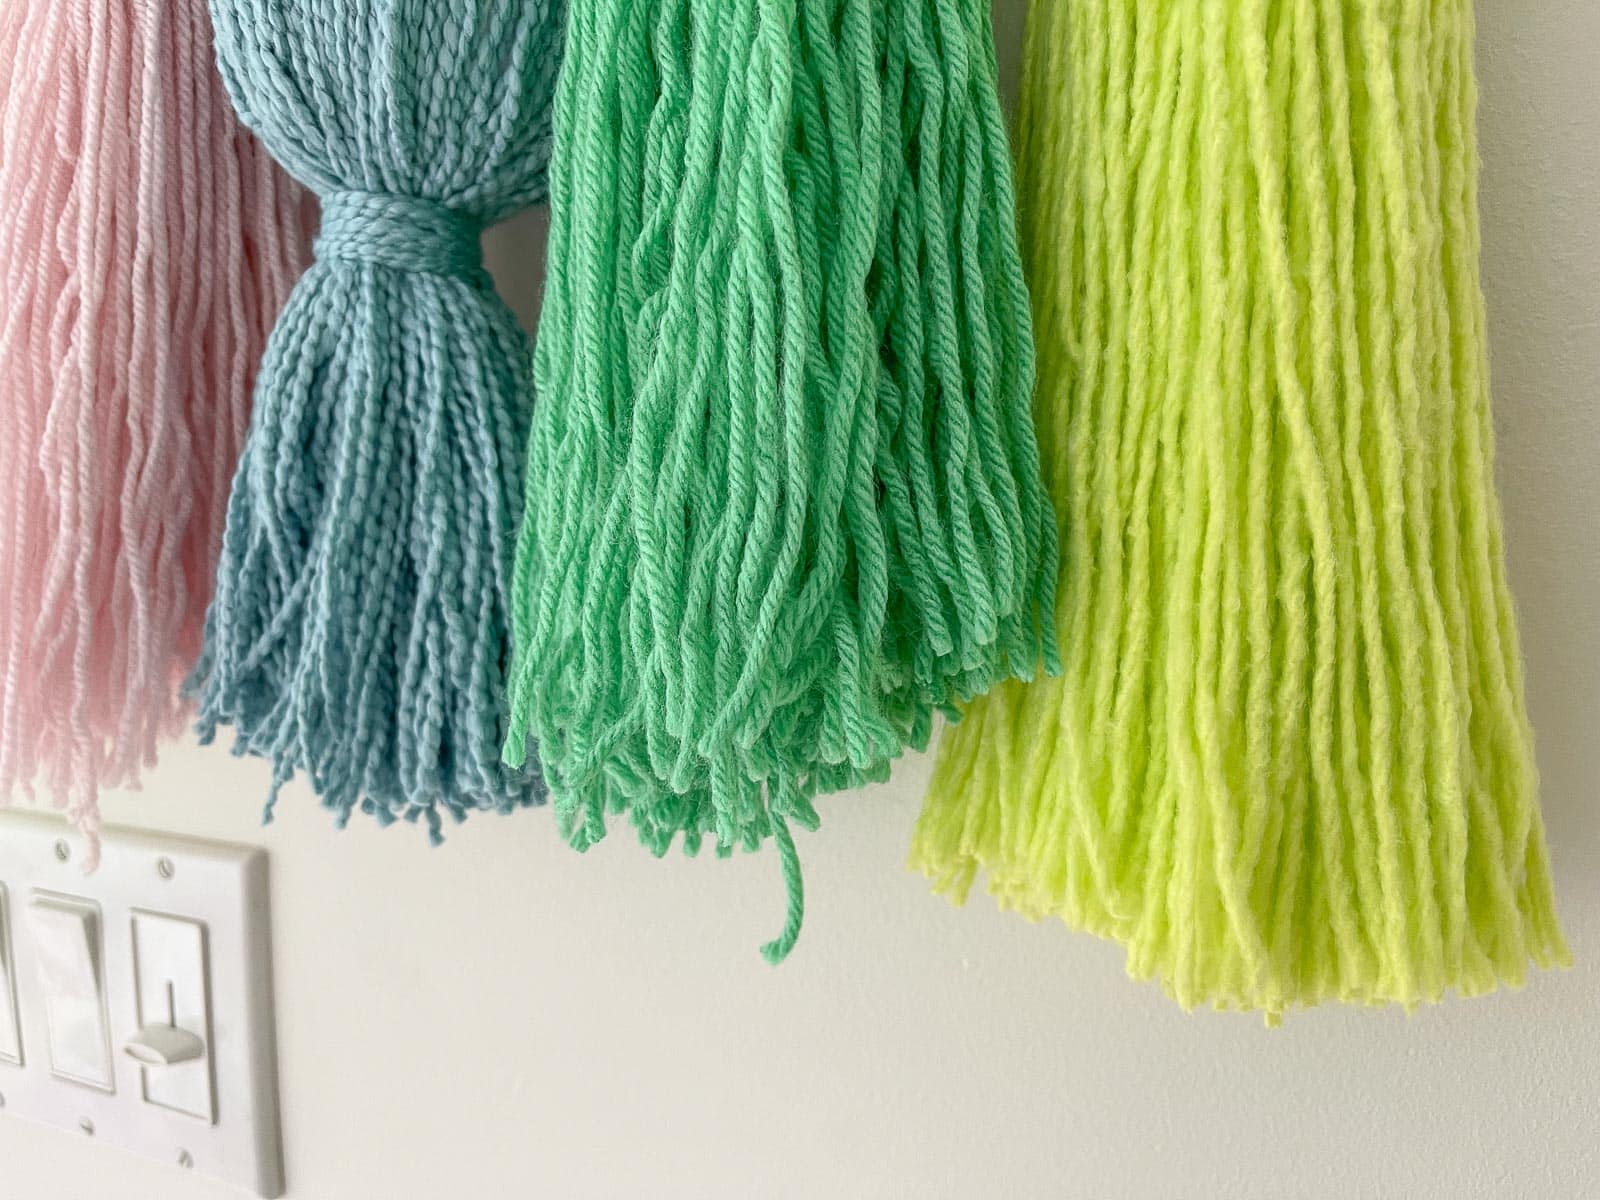 Trim the ends of yarn on each tassel